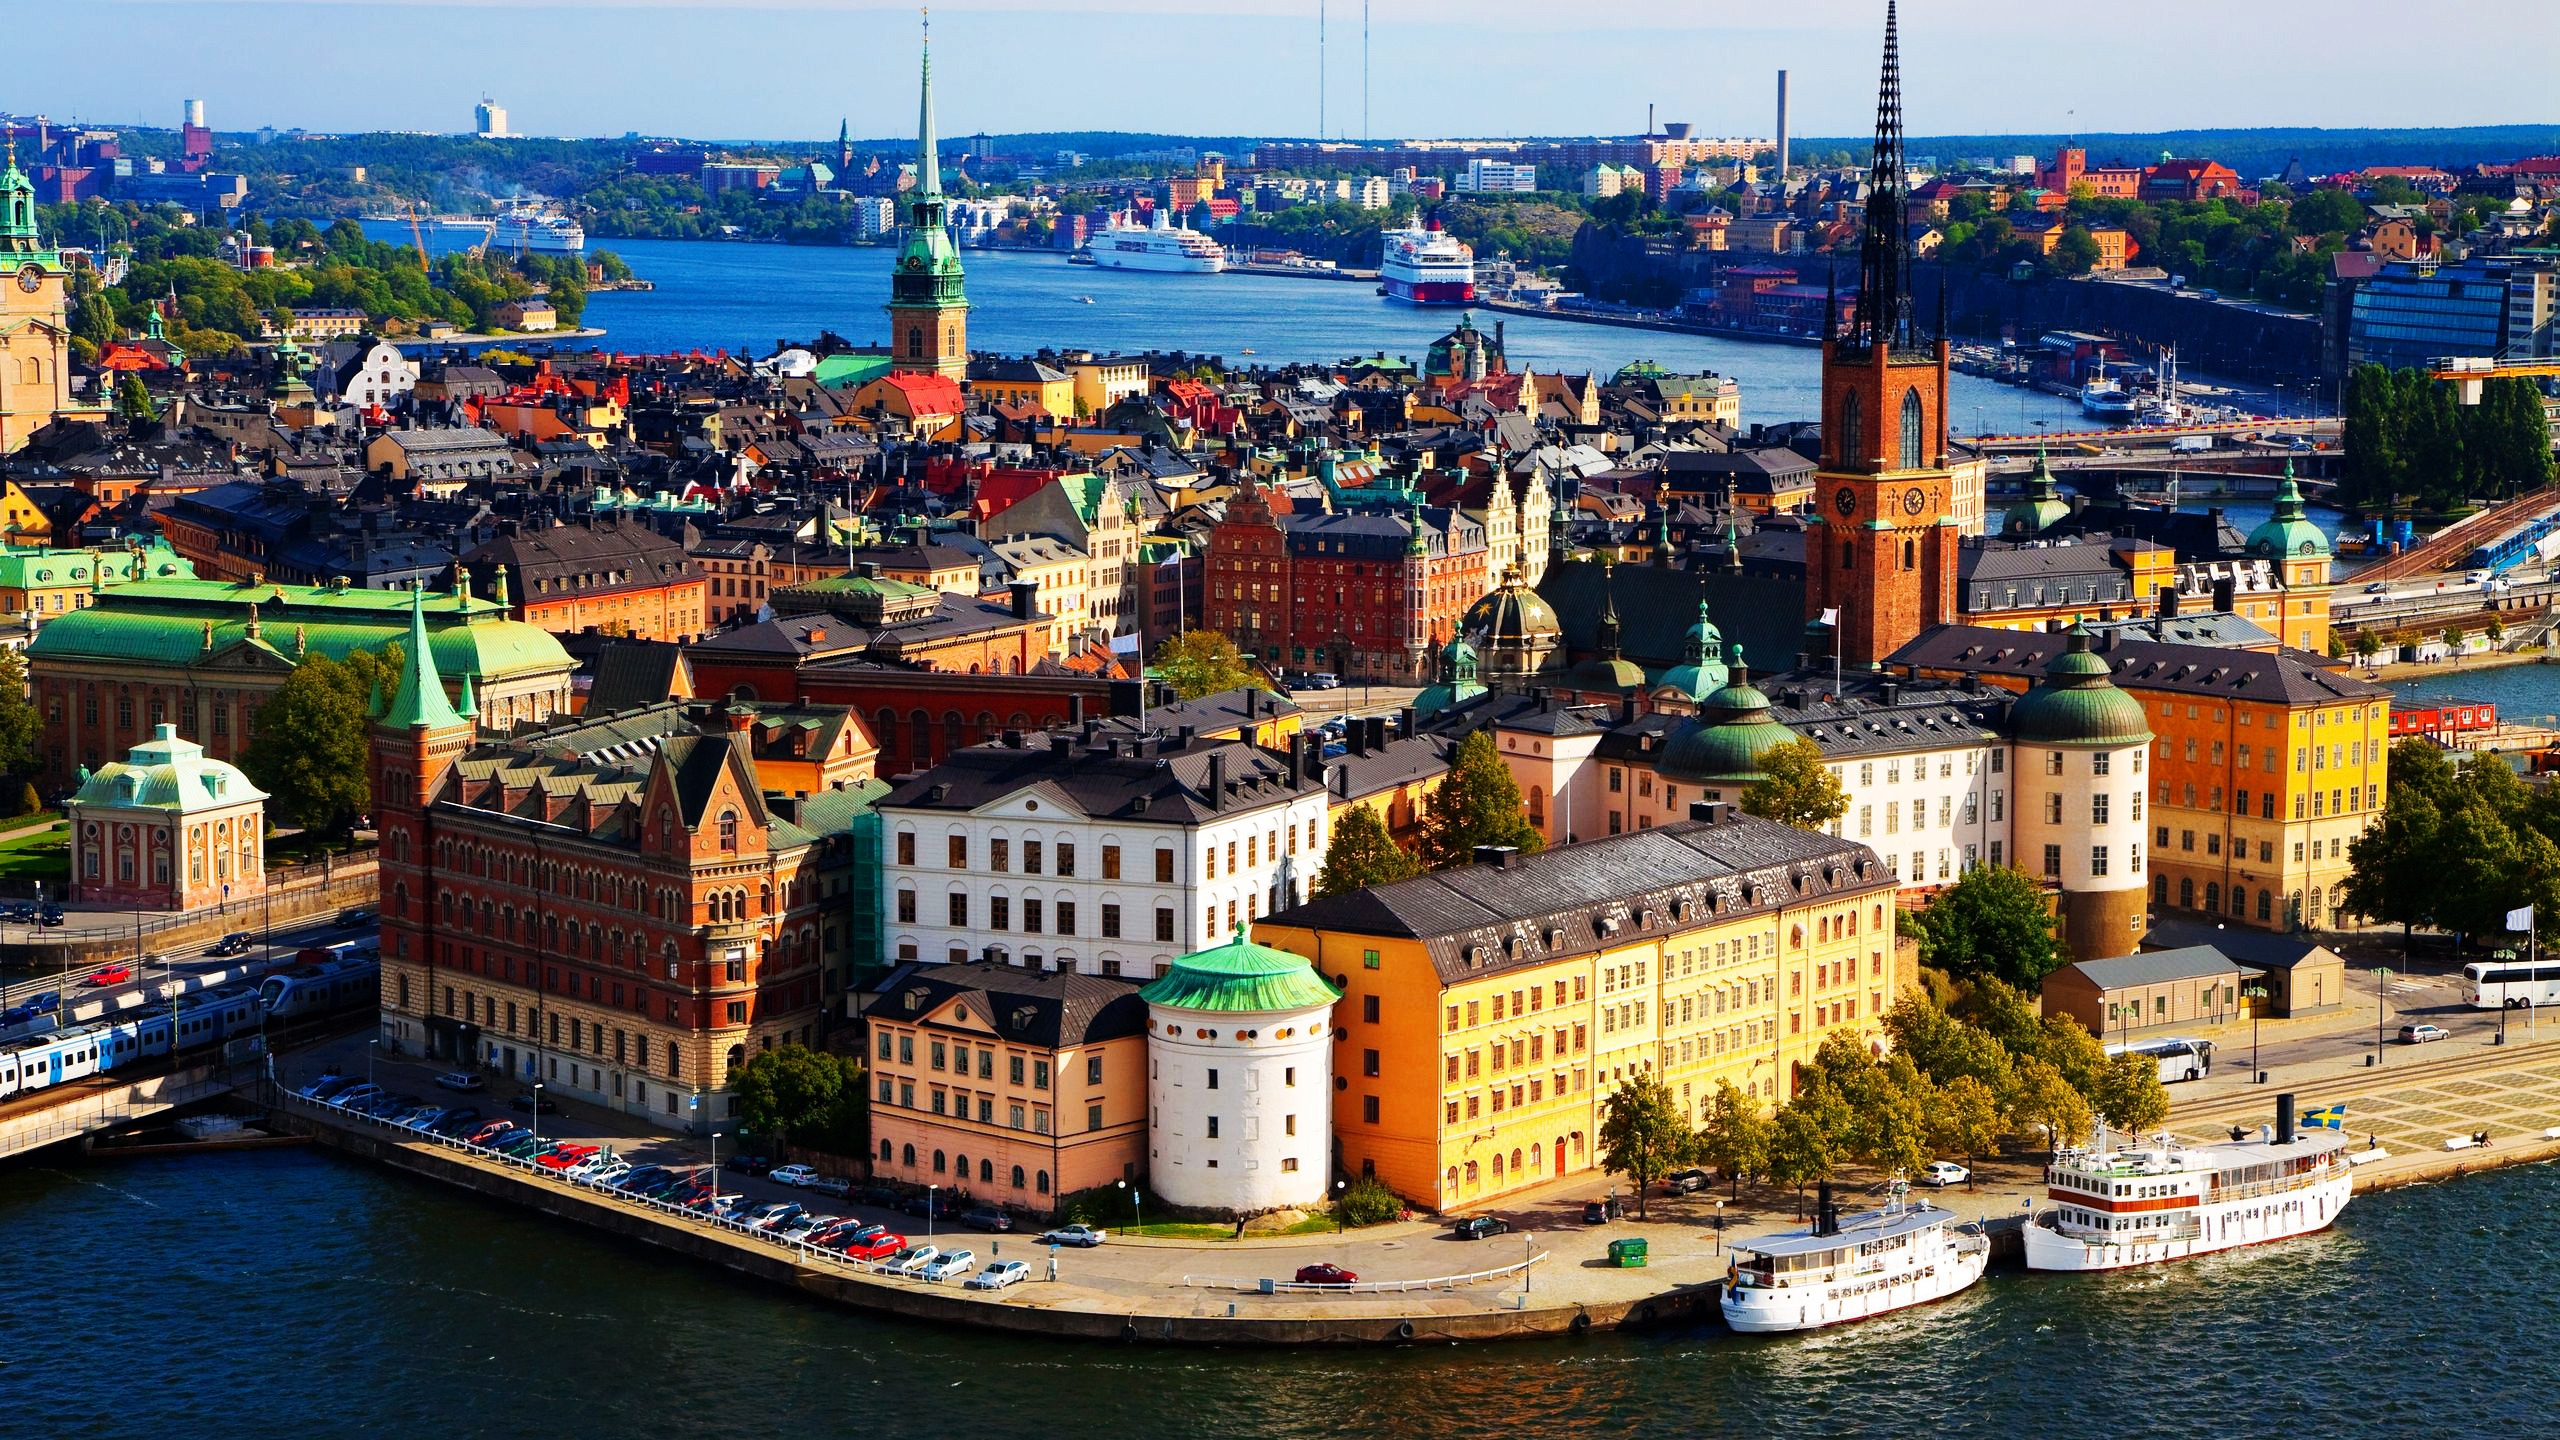 Stockholm Sweden for 2560x1440 HDTV resolution